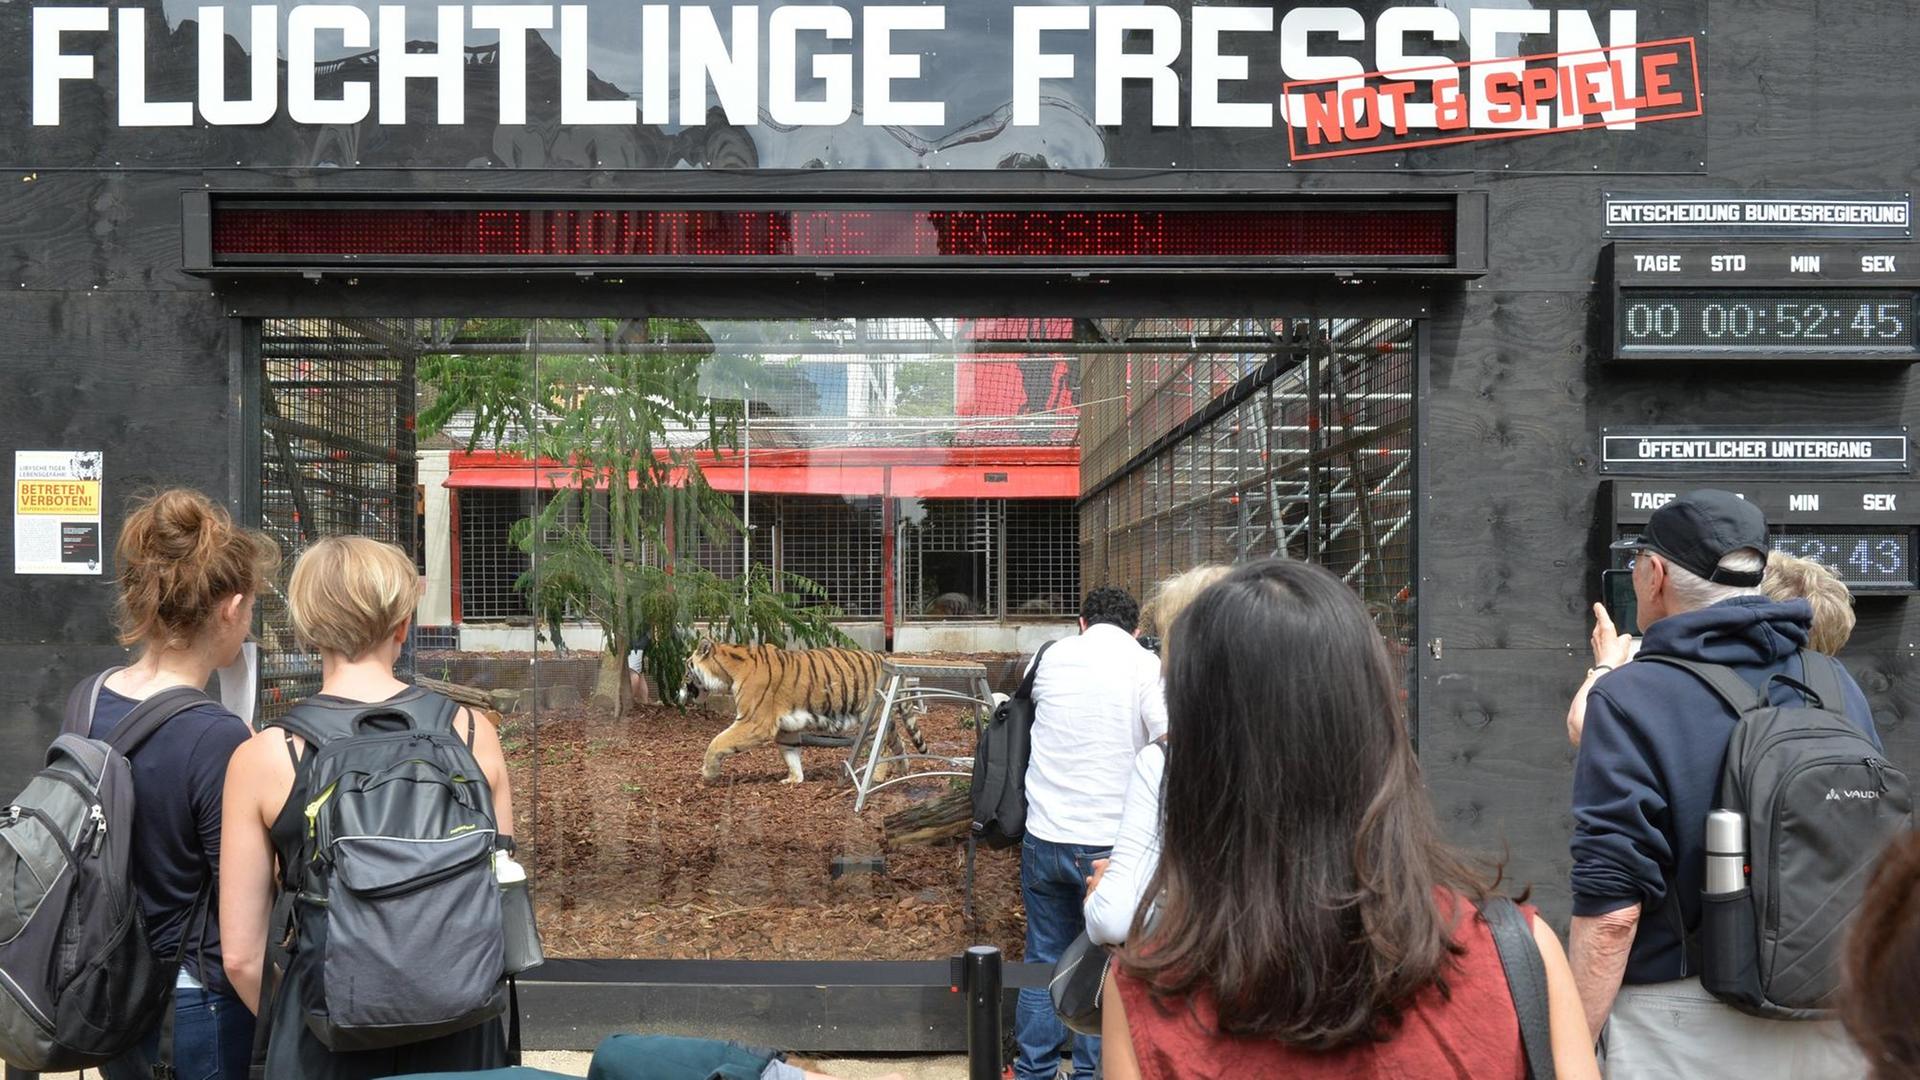 Ein Tiger ist am 22.06.2016 in Berlin vor dem Maxim Gorki Theater im Tigergehege mit der Aufschrift "Flüchtlinge Fressen" zu sehen. Das Theater arbeitet mit der für Provokationen bekannten Künstlergruppe "Zentrum für politische Schönheit" zusammen.